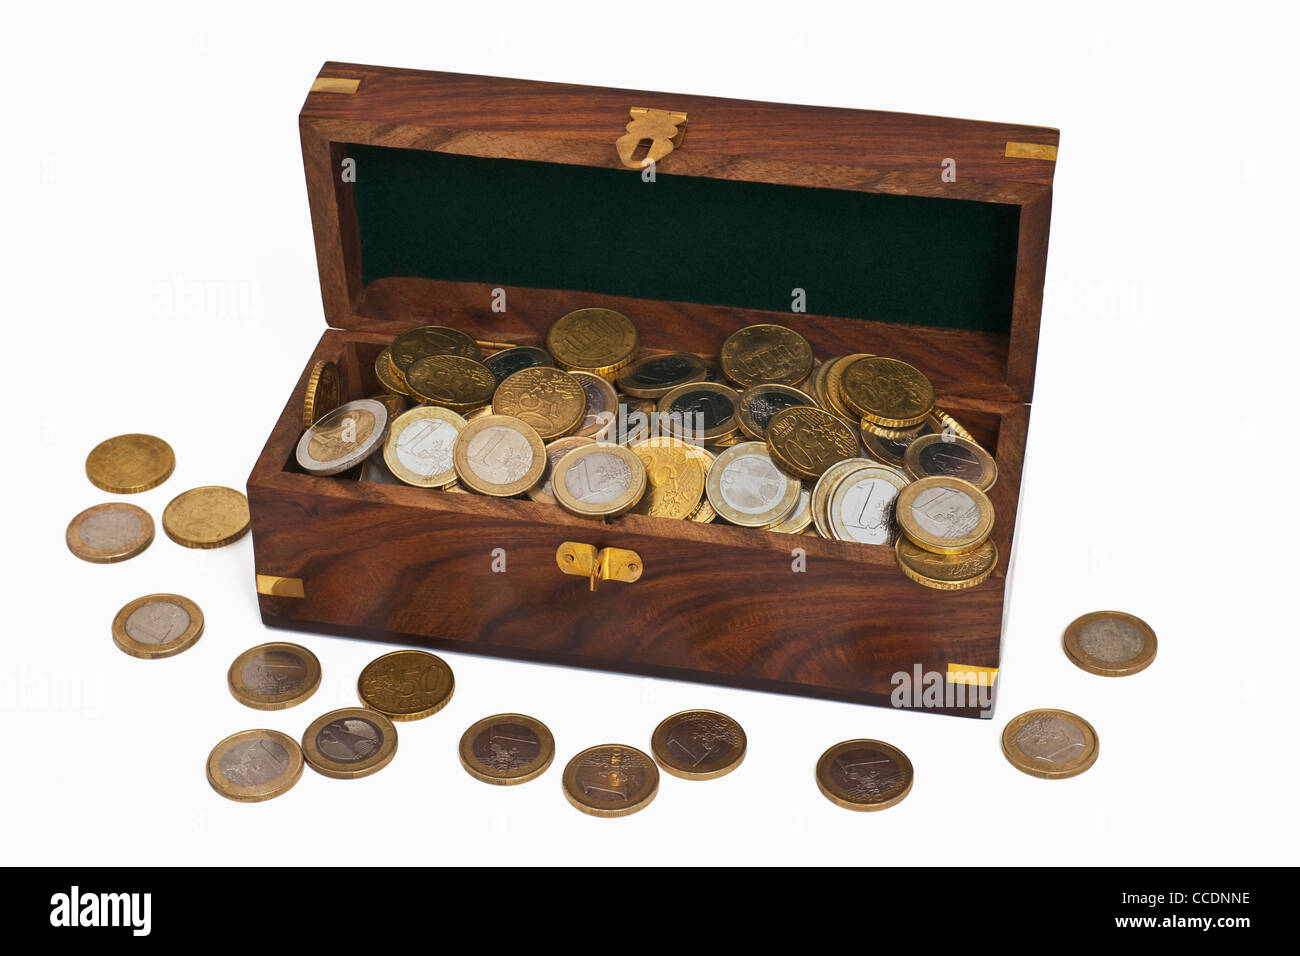 In einer hölzernen Truhe liegen viele Euro-Münzen, Geld liegt daneben. | beaucoup de pièces d'euros dans un coffre en bois, aux côtés de l'argent. Banque D'Images